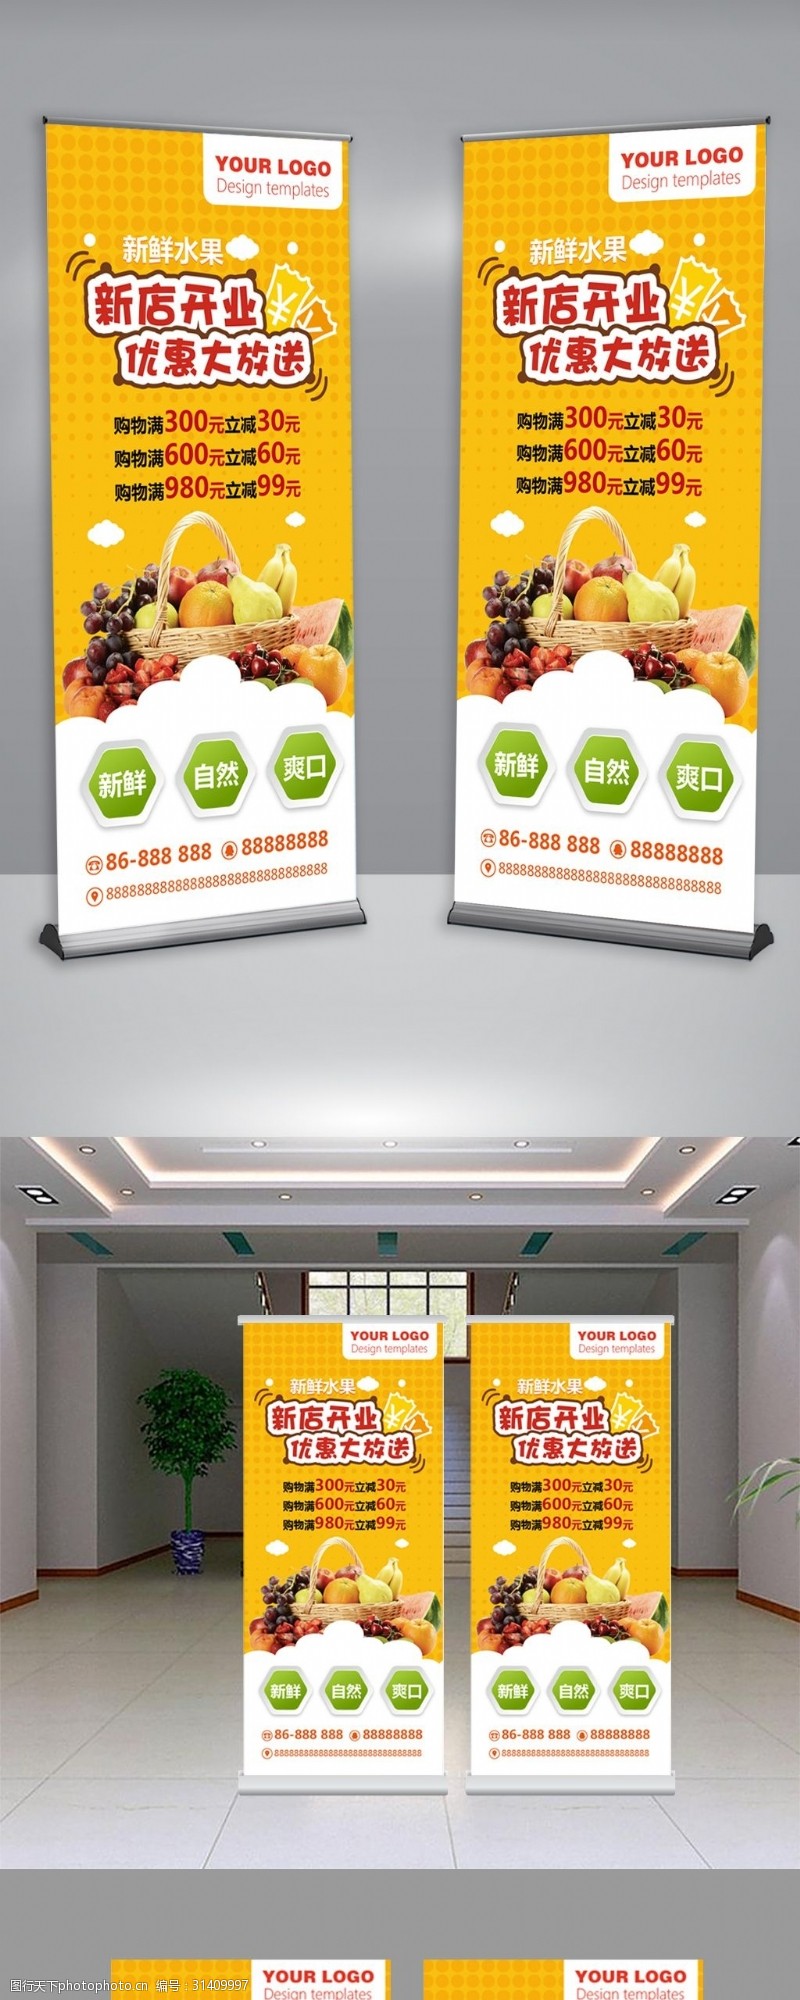 招生易拉宝蔬菜水果活动宣传x展架设计